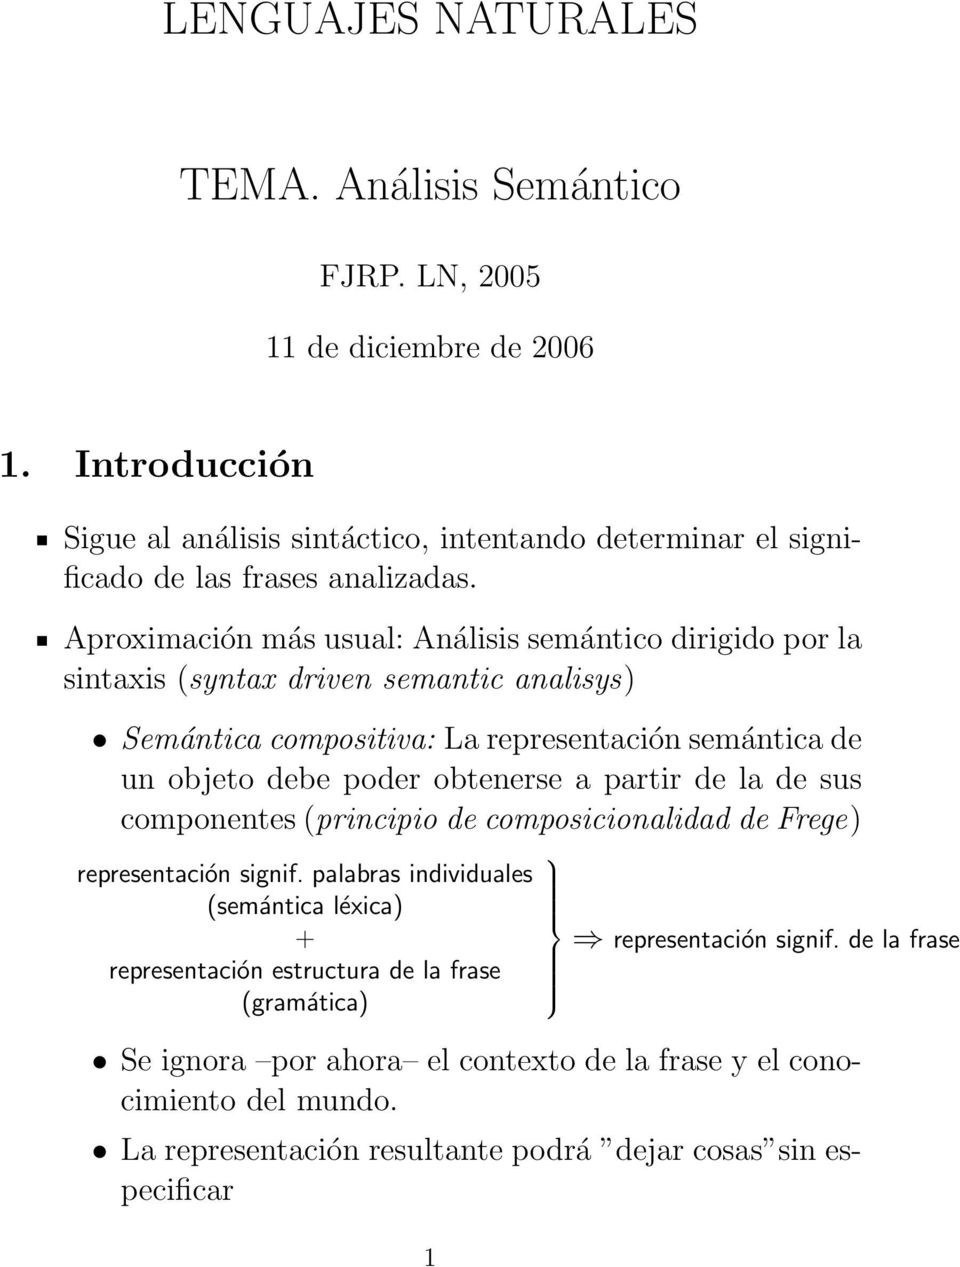 Aproximación más usual: Análisis semántico dirigido por la sintaxis (syntax driven semantic analisys) Semántica compositiva: La representación semántica de un objeto debe poder